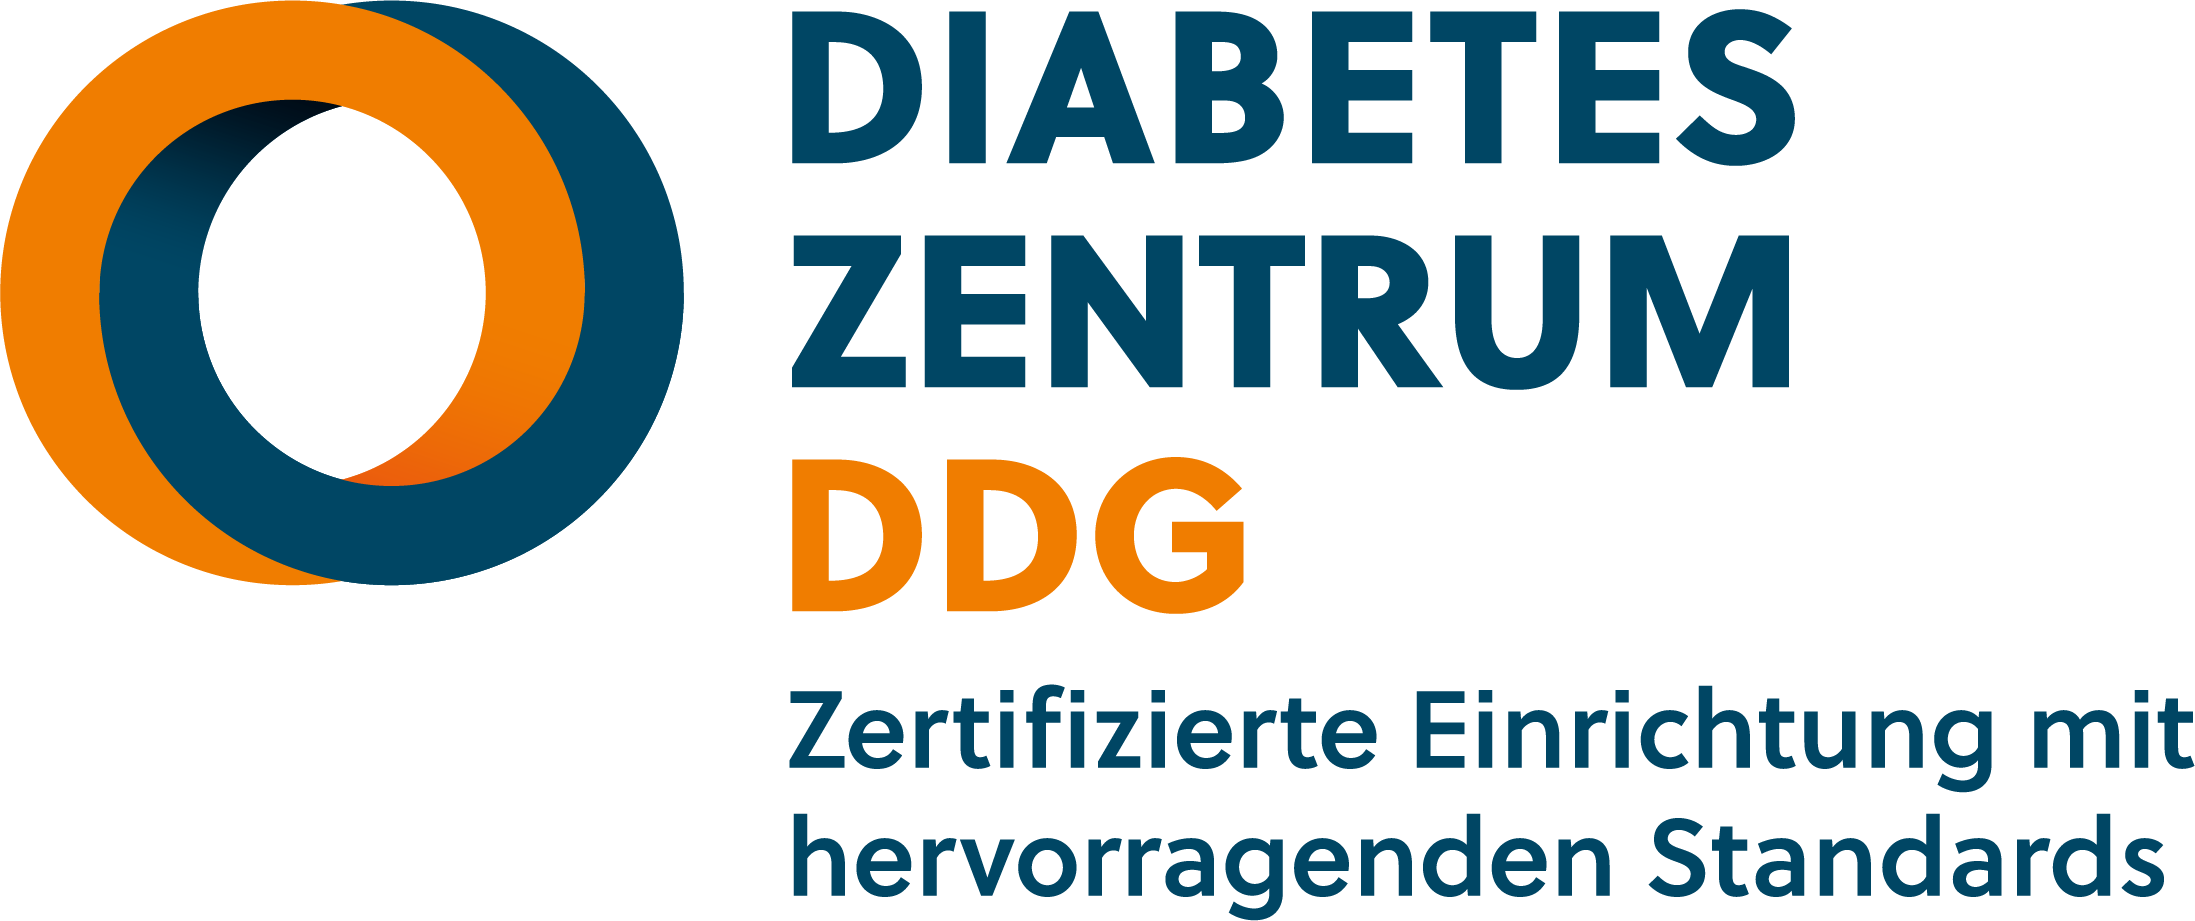 Diabeteszentrum Subline RGB